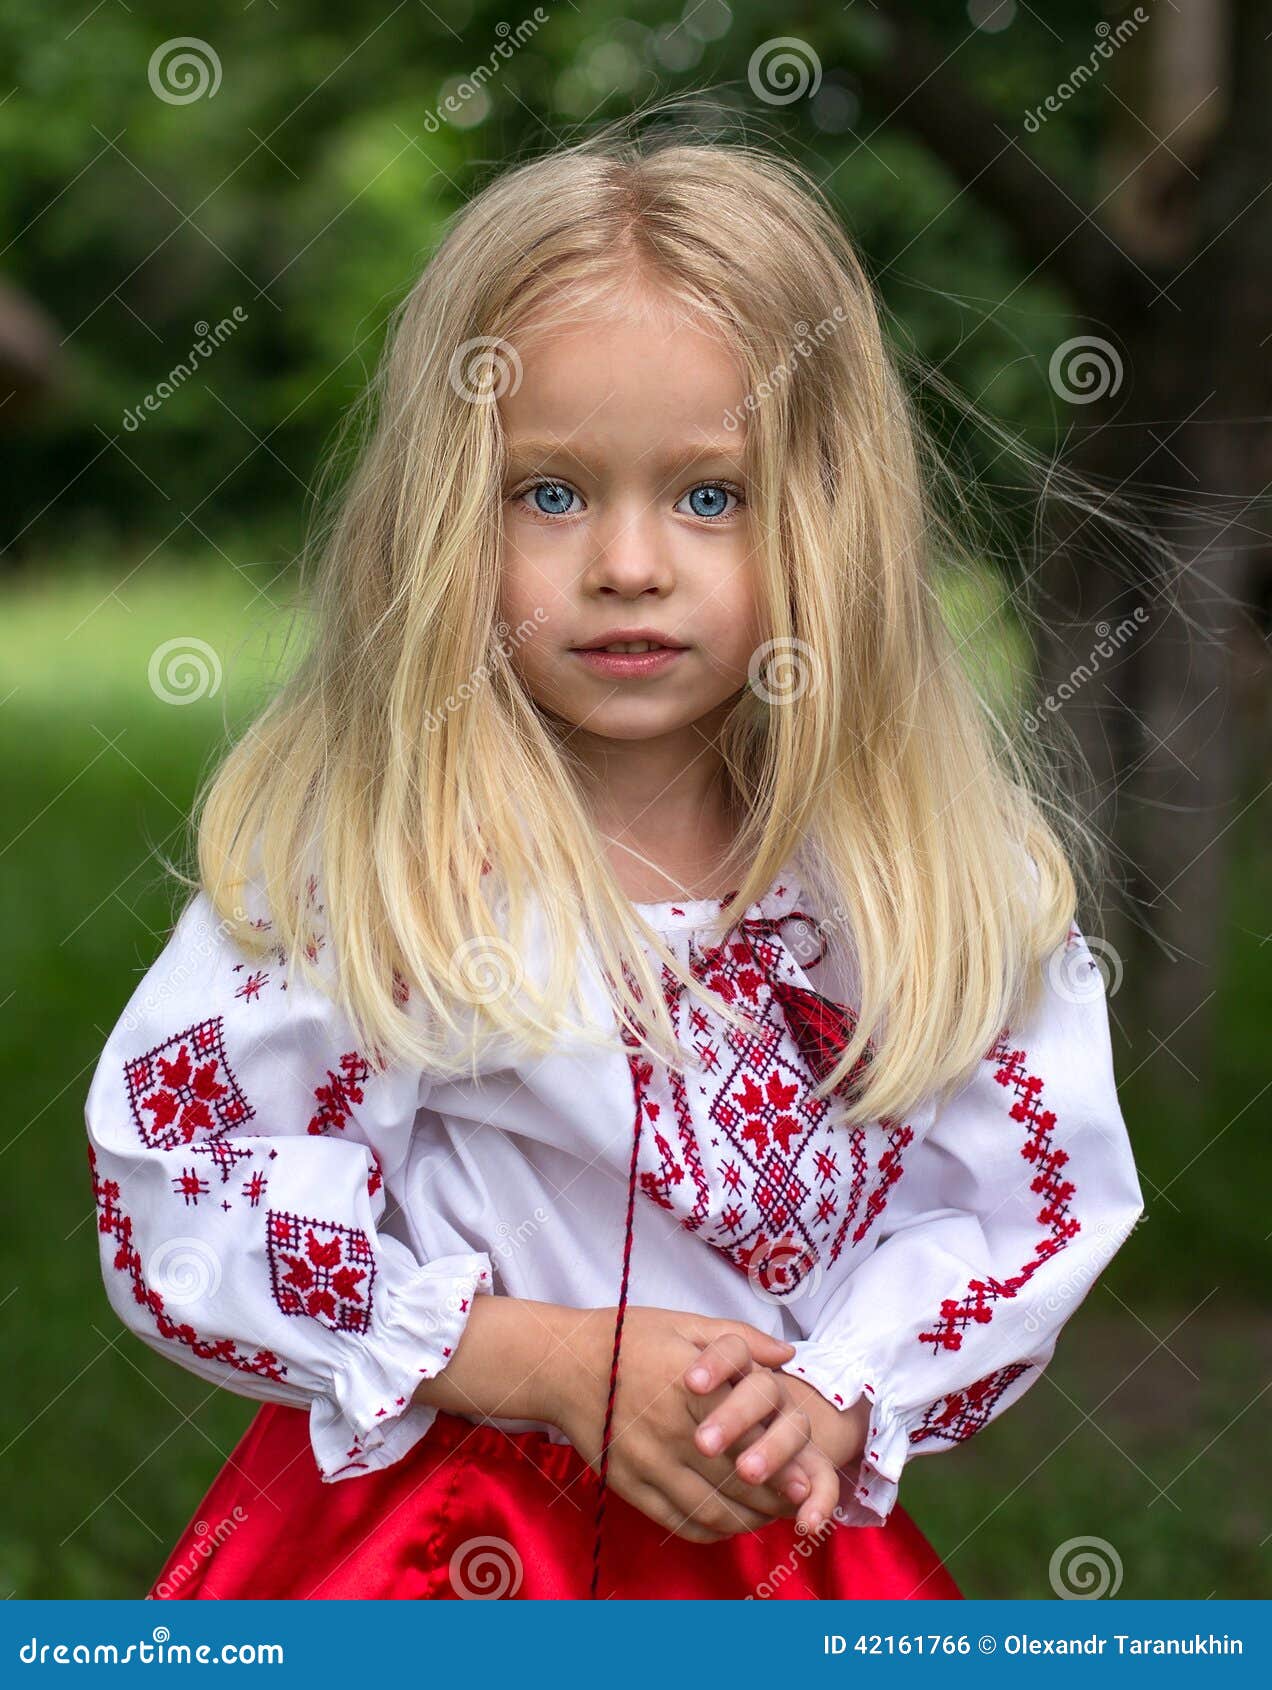 little ukrainian girl